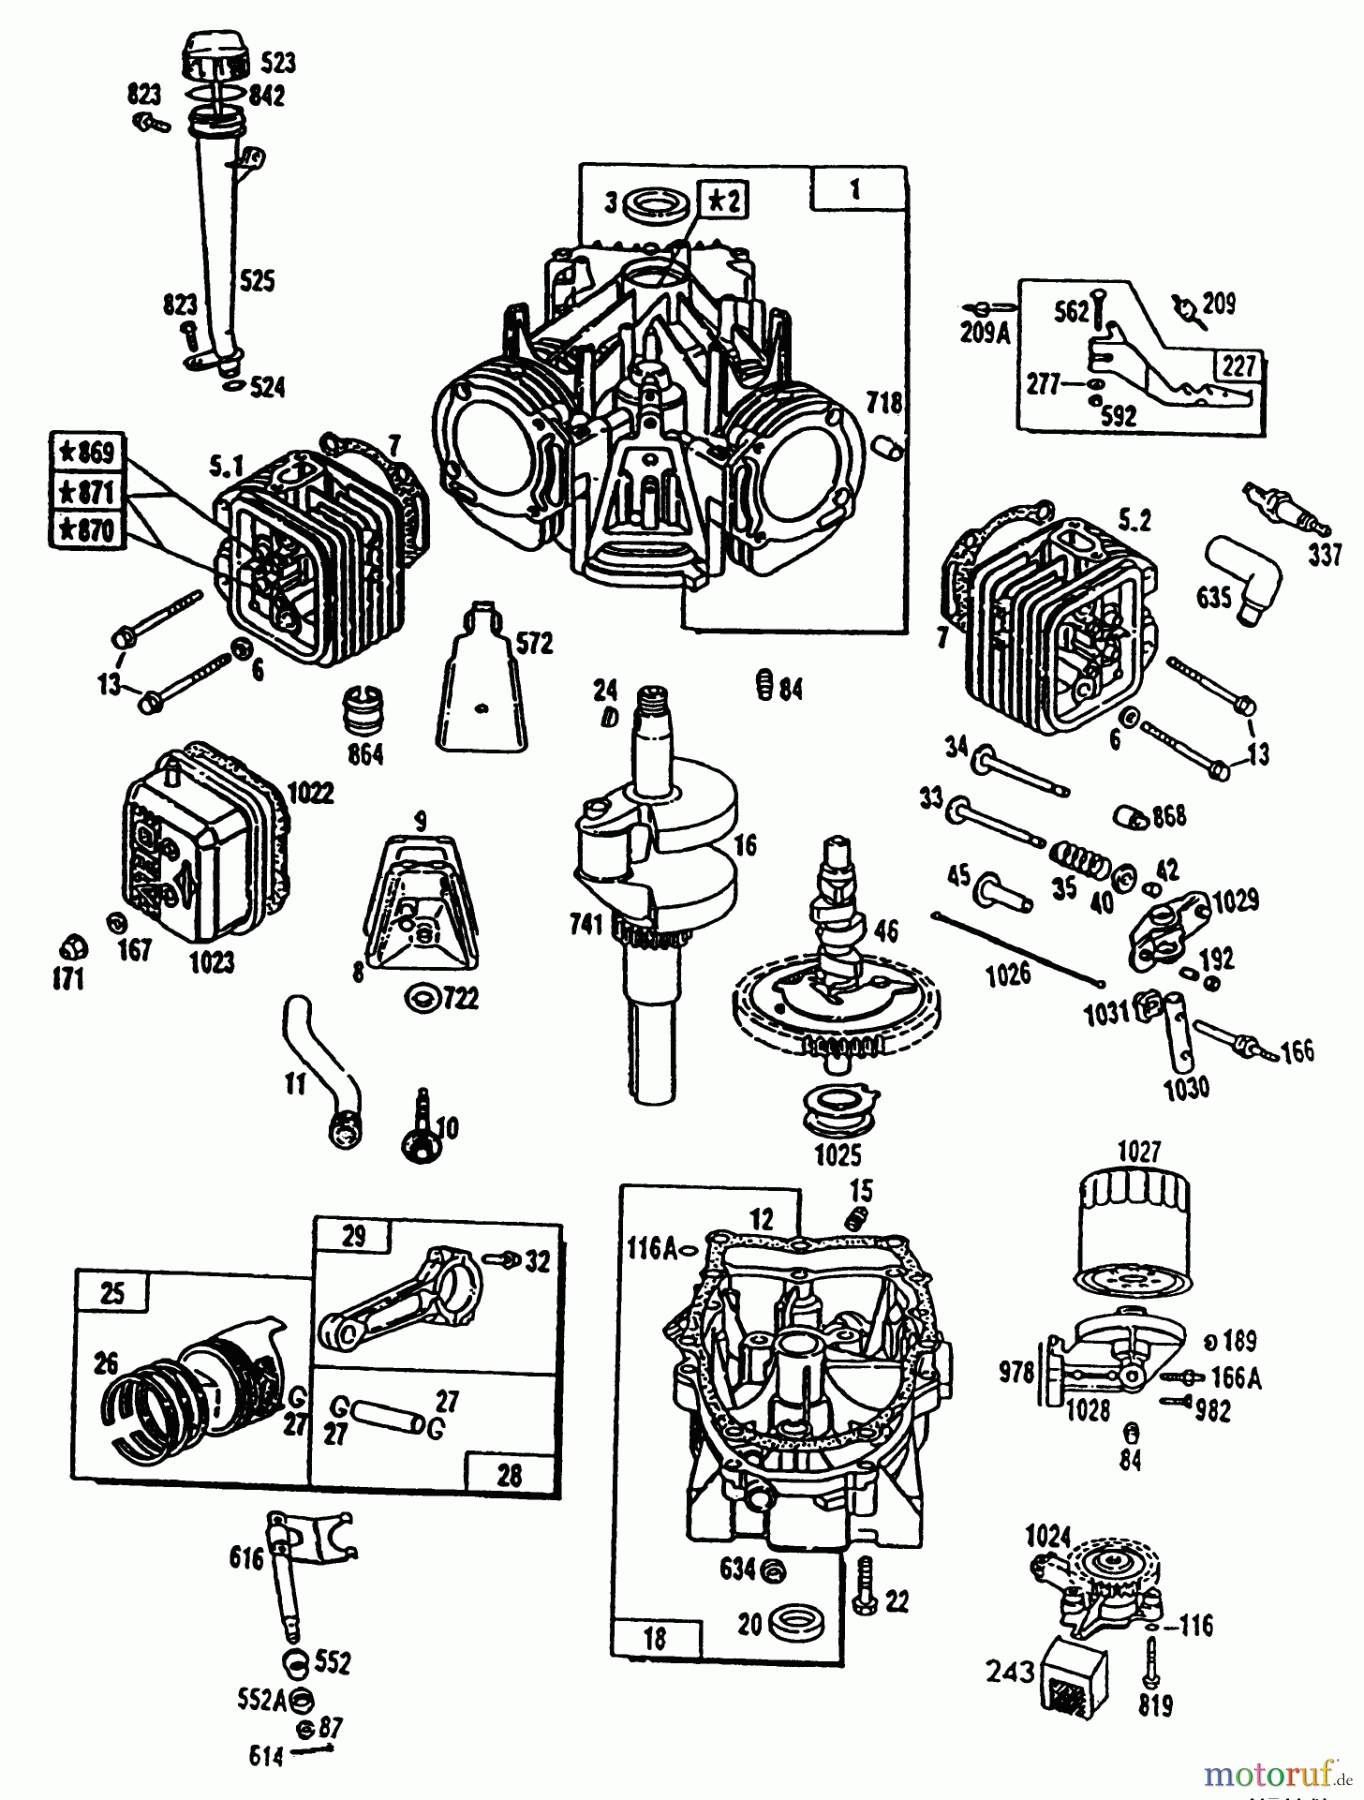  Toro Neu Mowers, Lawn & Garden Tractor Seite 1 42-16BE01 (246-H) - Toro 246-H Yard Tractor, 1992 (2000001-2999999) ENGINE TORO POWER PLUS #1